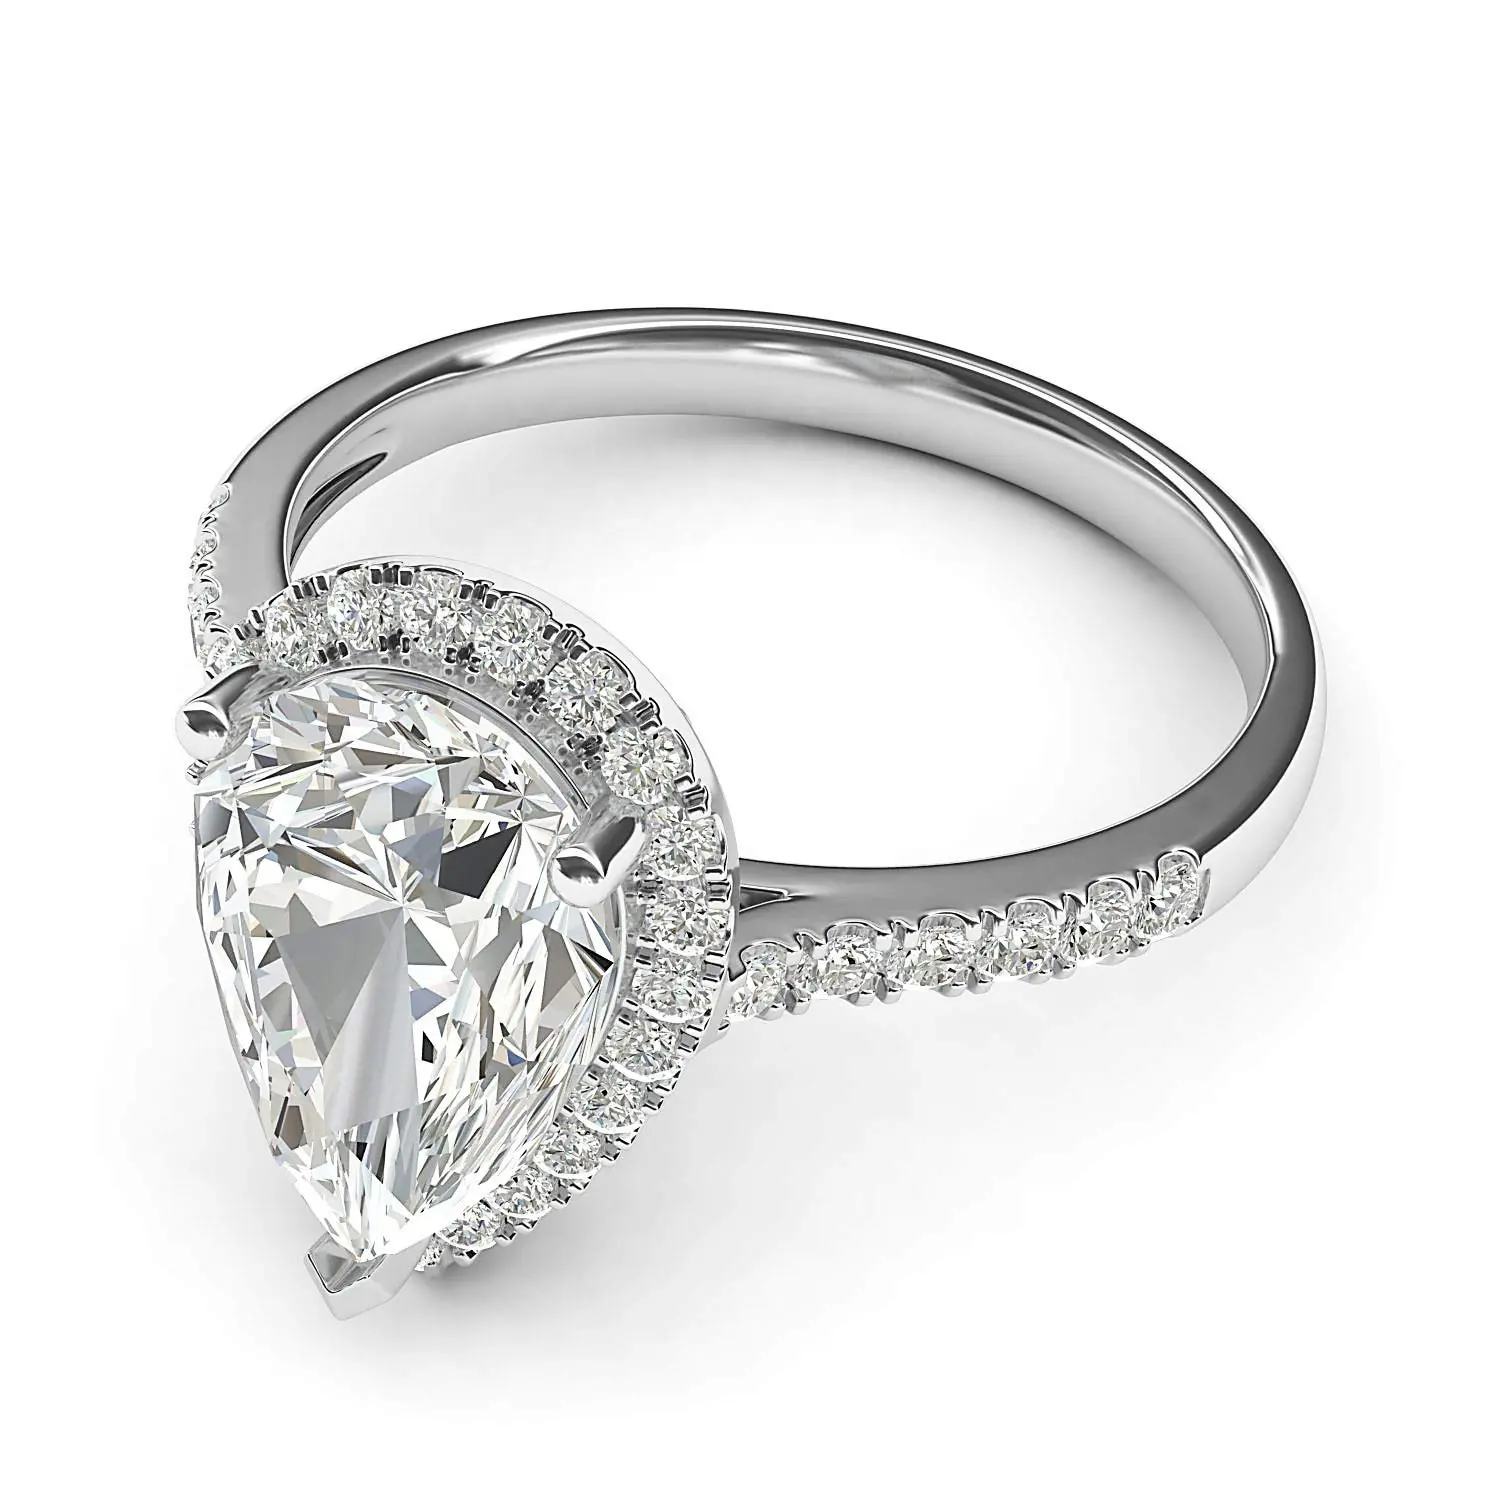 Kadınlar için IGI sertifikası armut şekli Moissanite nişan yüzüğü, D renk VVS1 Lab yetiştirilen elmas alyans 14K beyaz